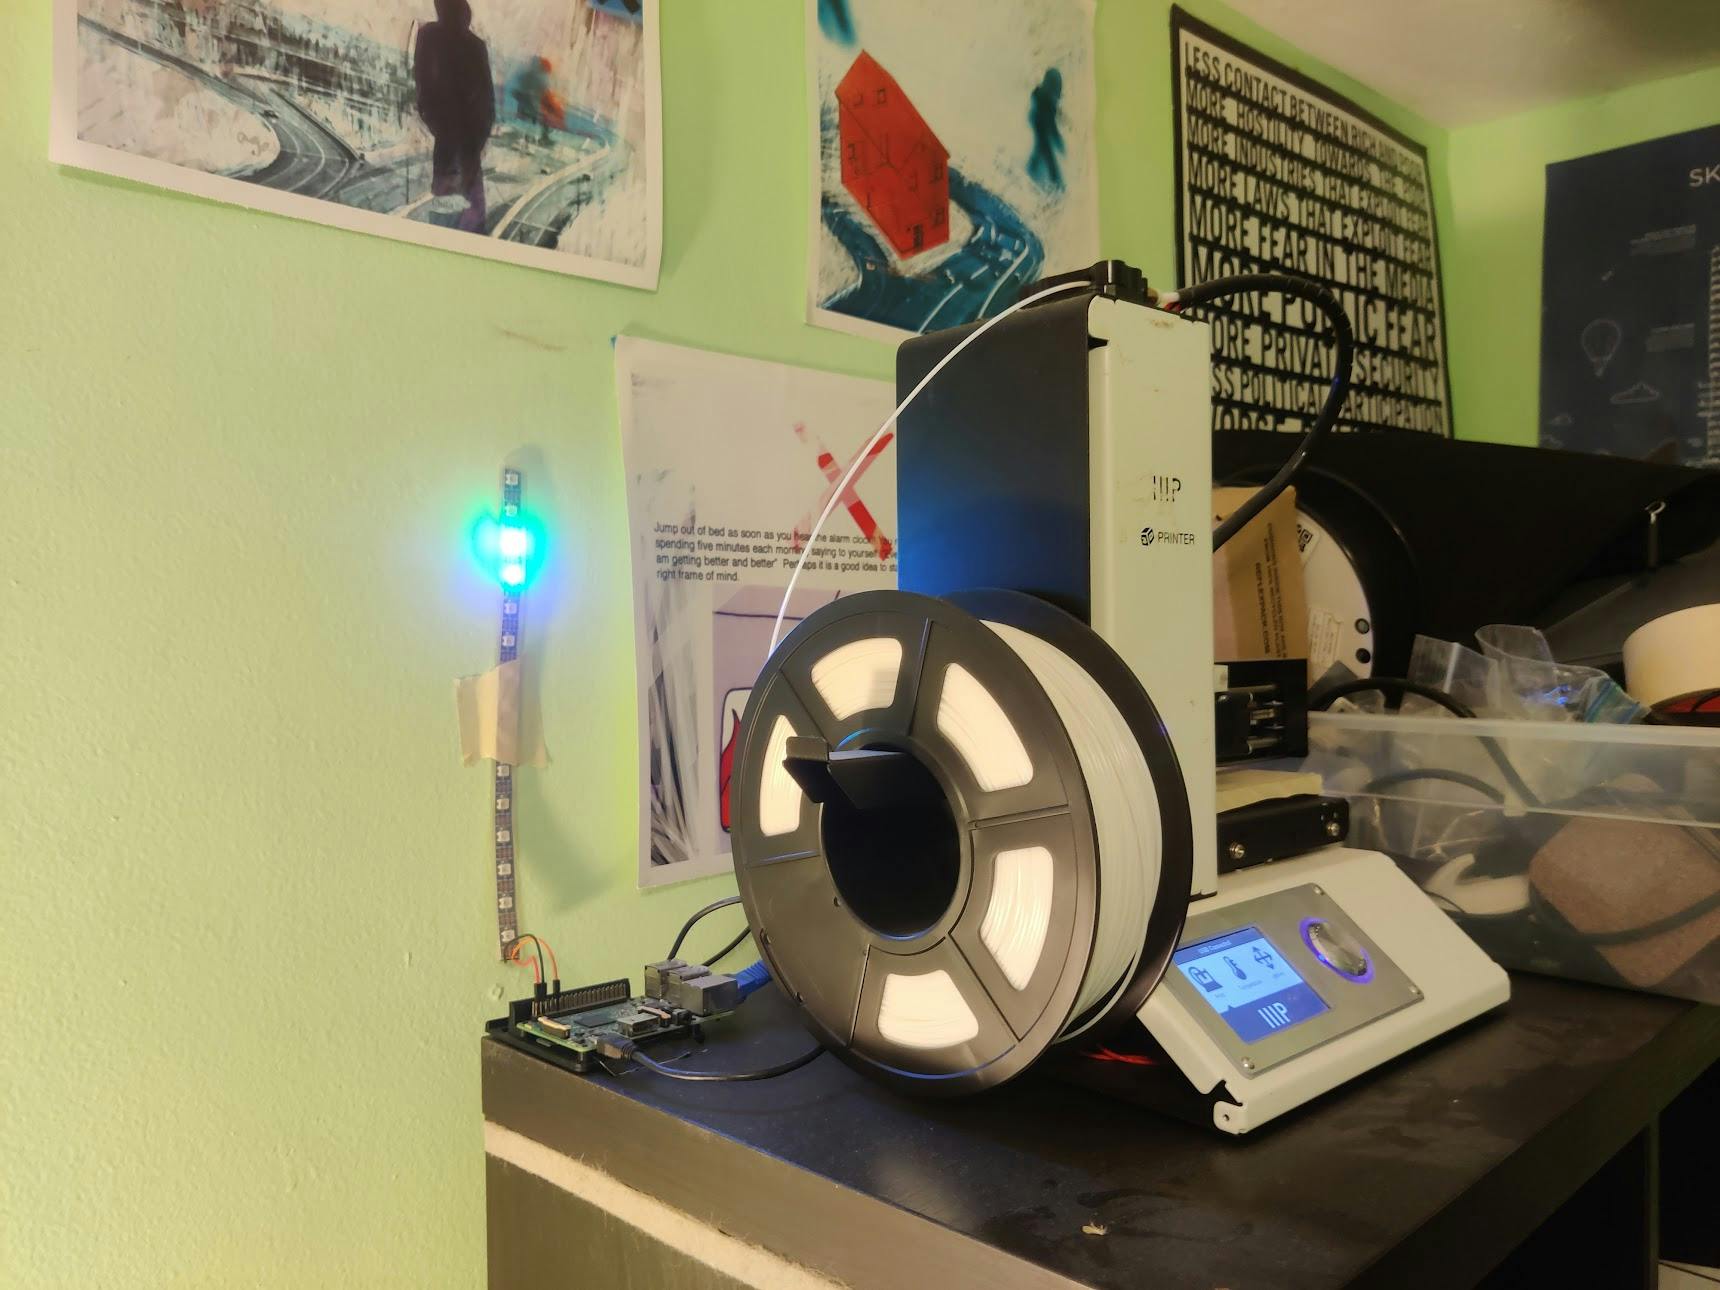 3D Printer Light Tower 